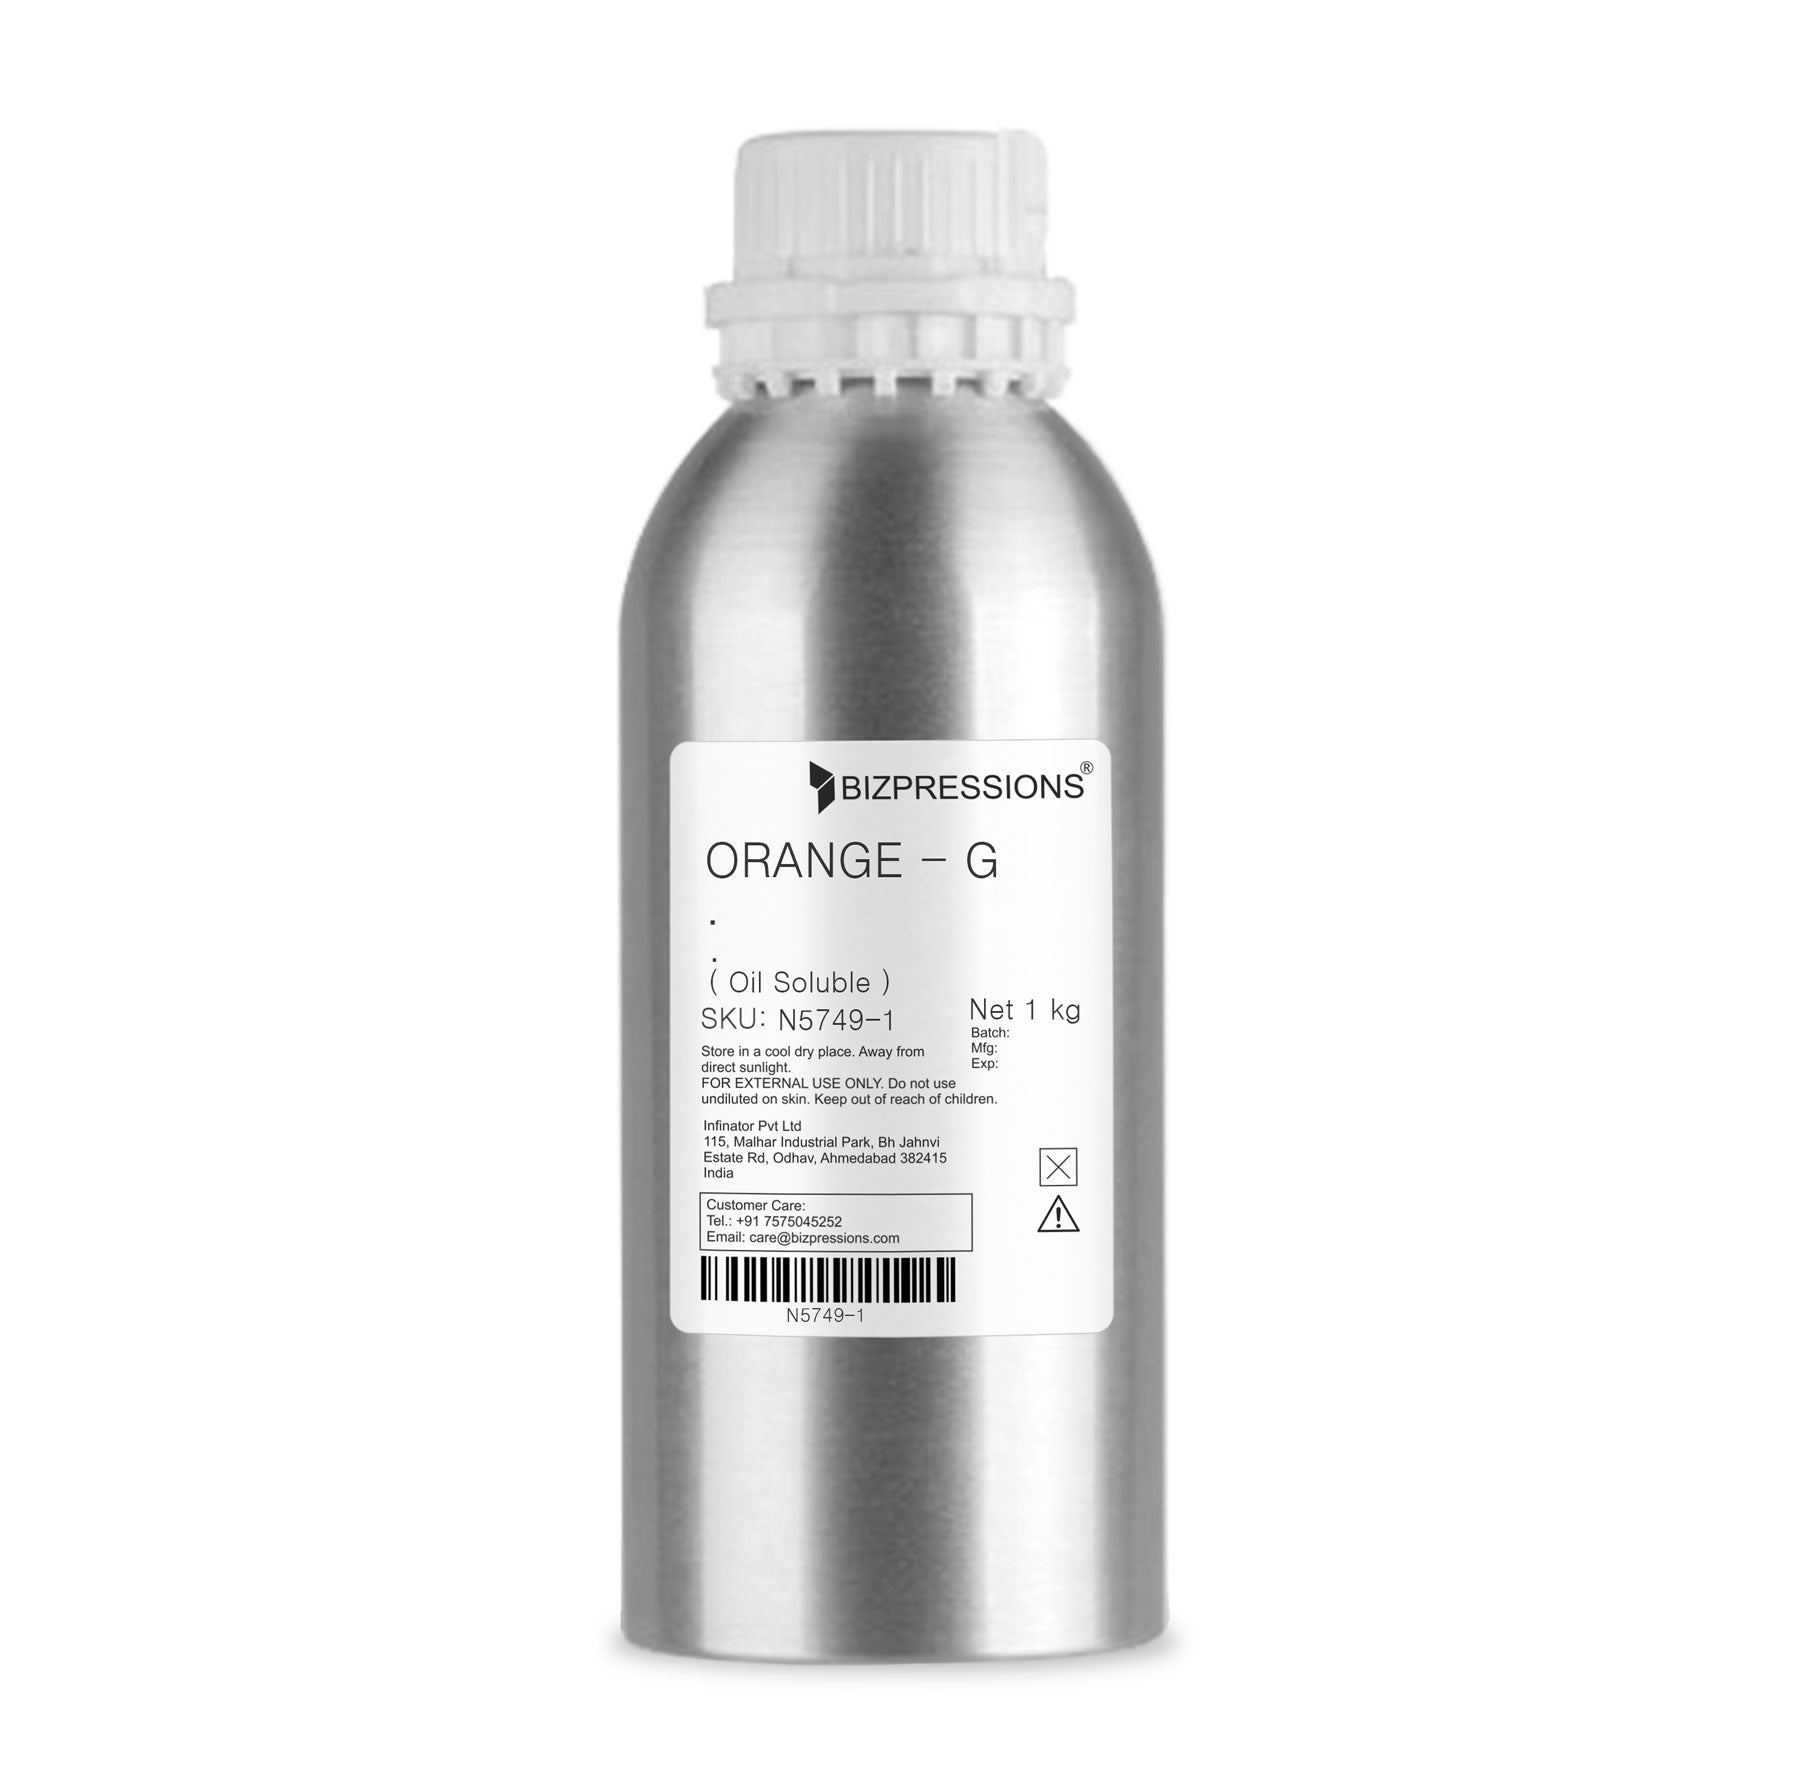 ORANGE - G - Fragrance ( Oil Soluble ) 1 kg